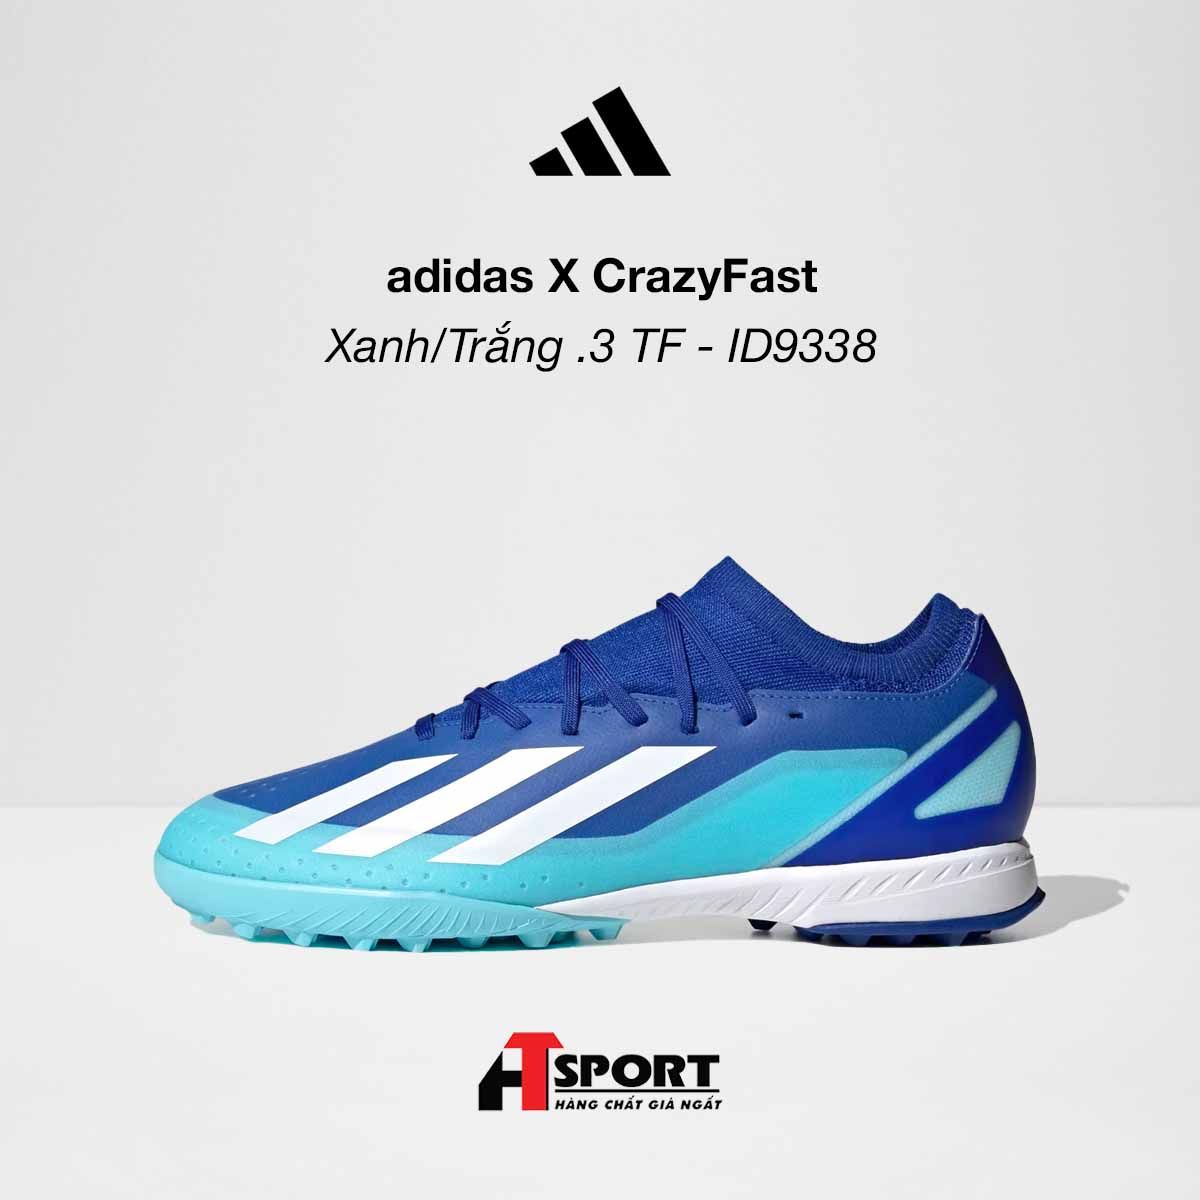  adidas X CrazyFast Xanh/Trắng .3 TF - ID9338 